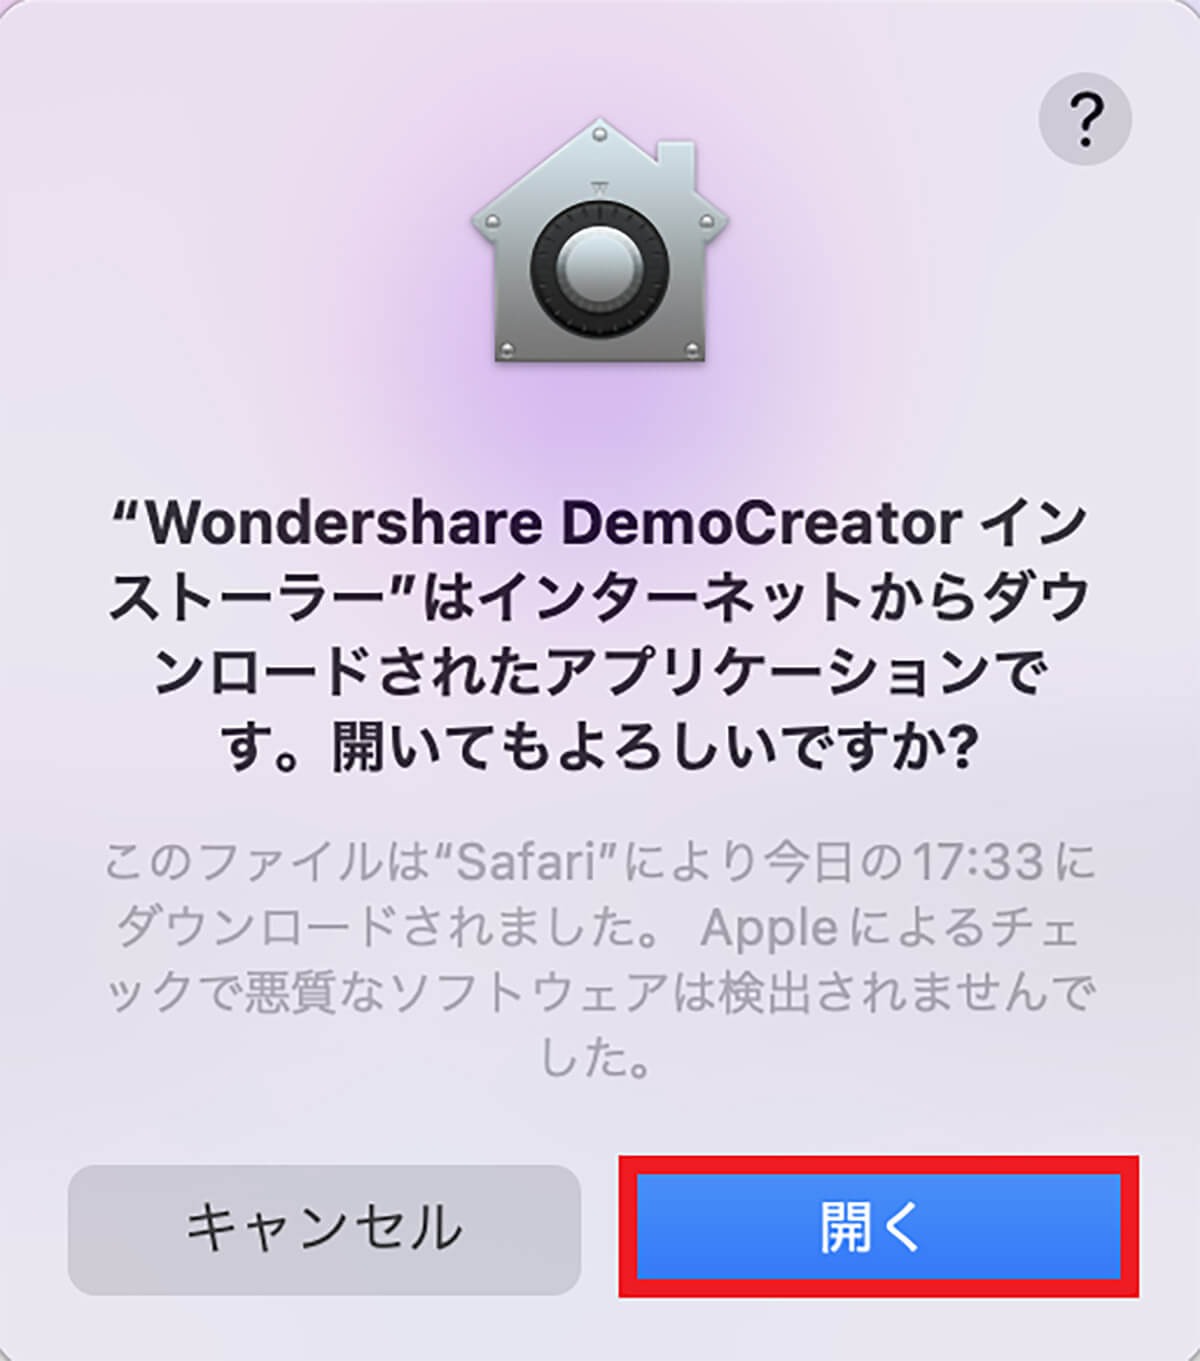 【手順①】Wondershare DemoCreatorをダウンロードし起動5